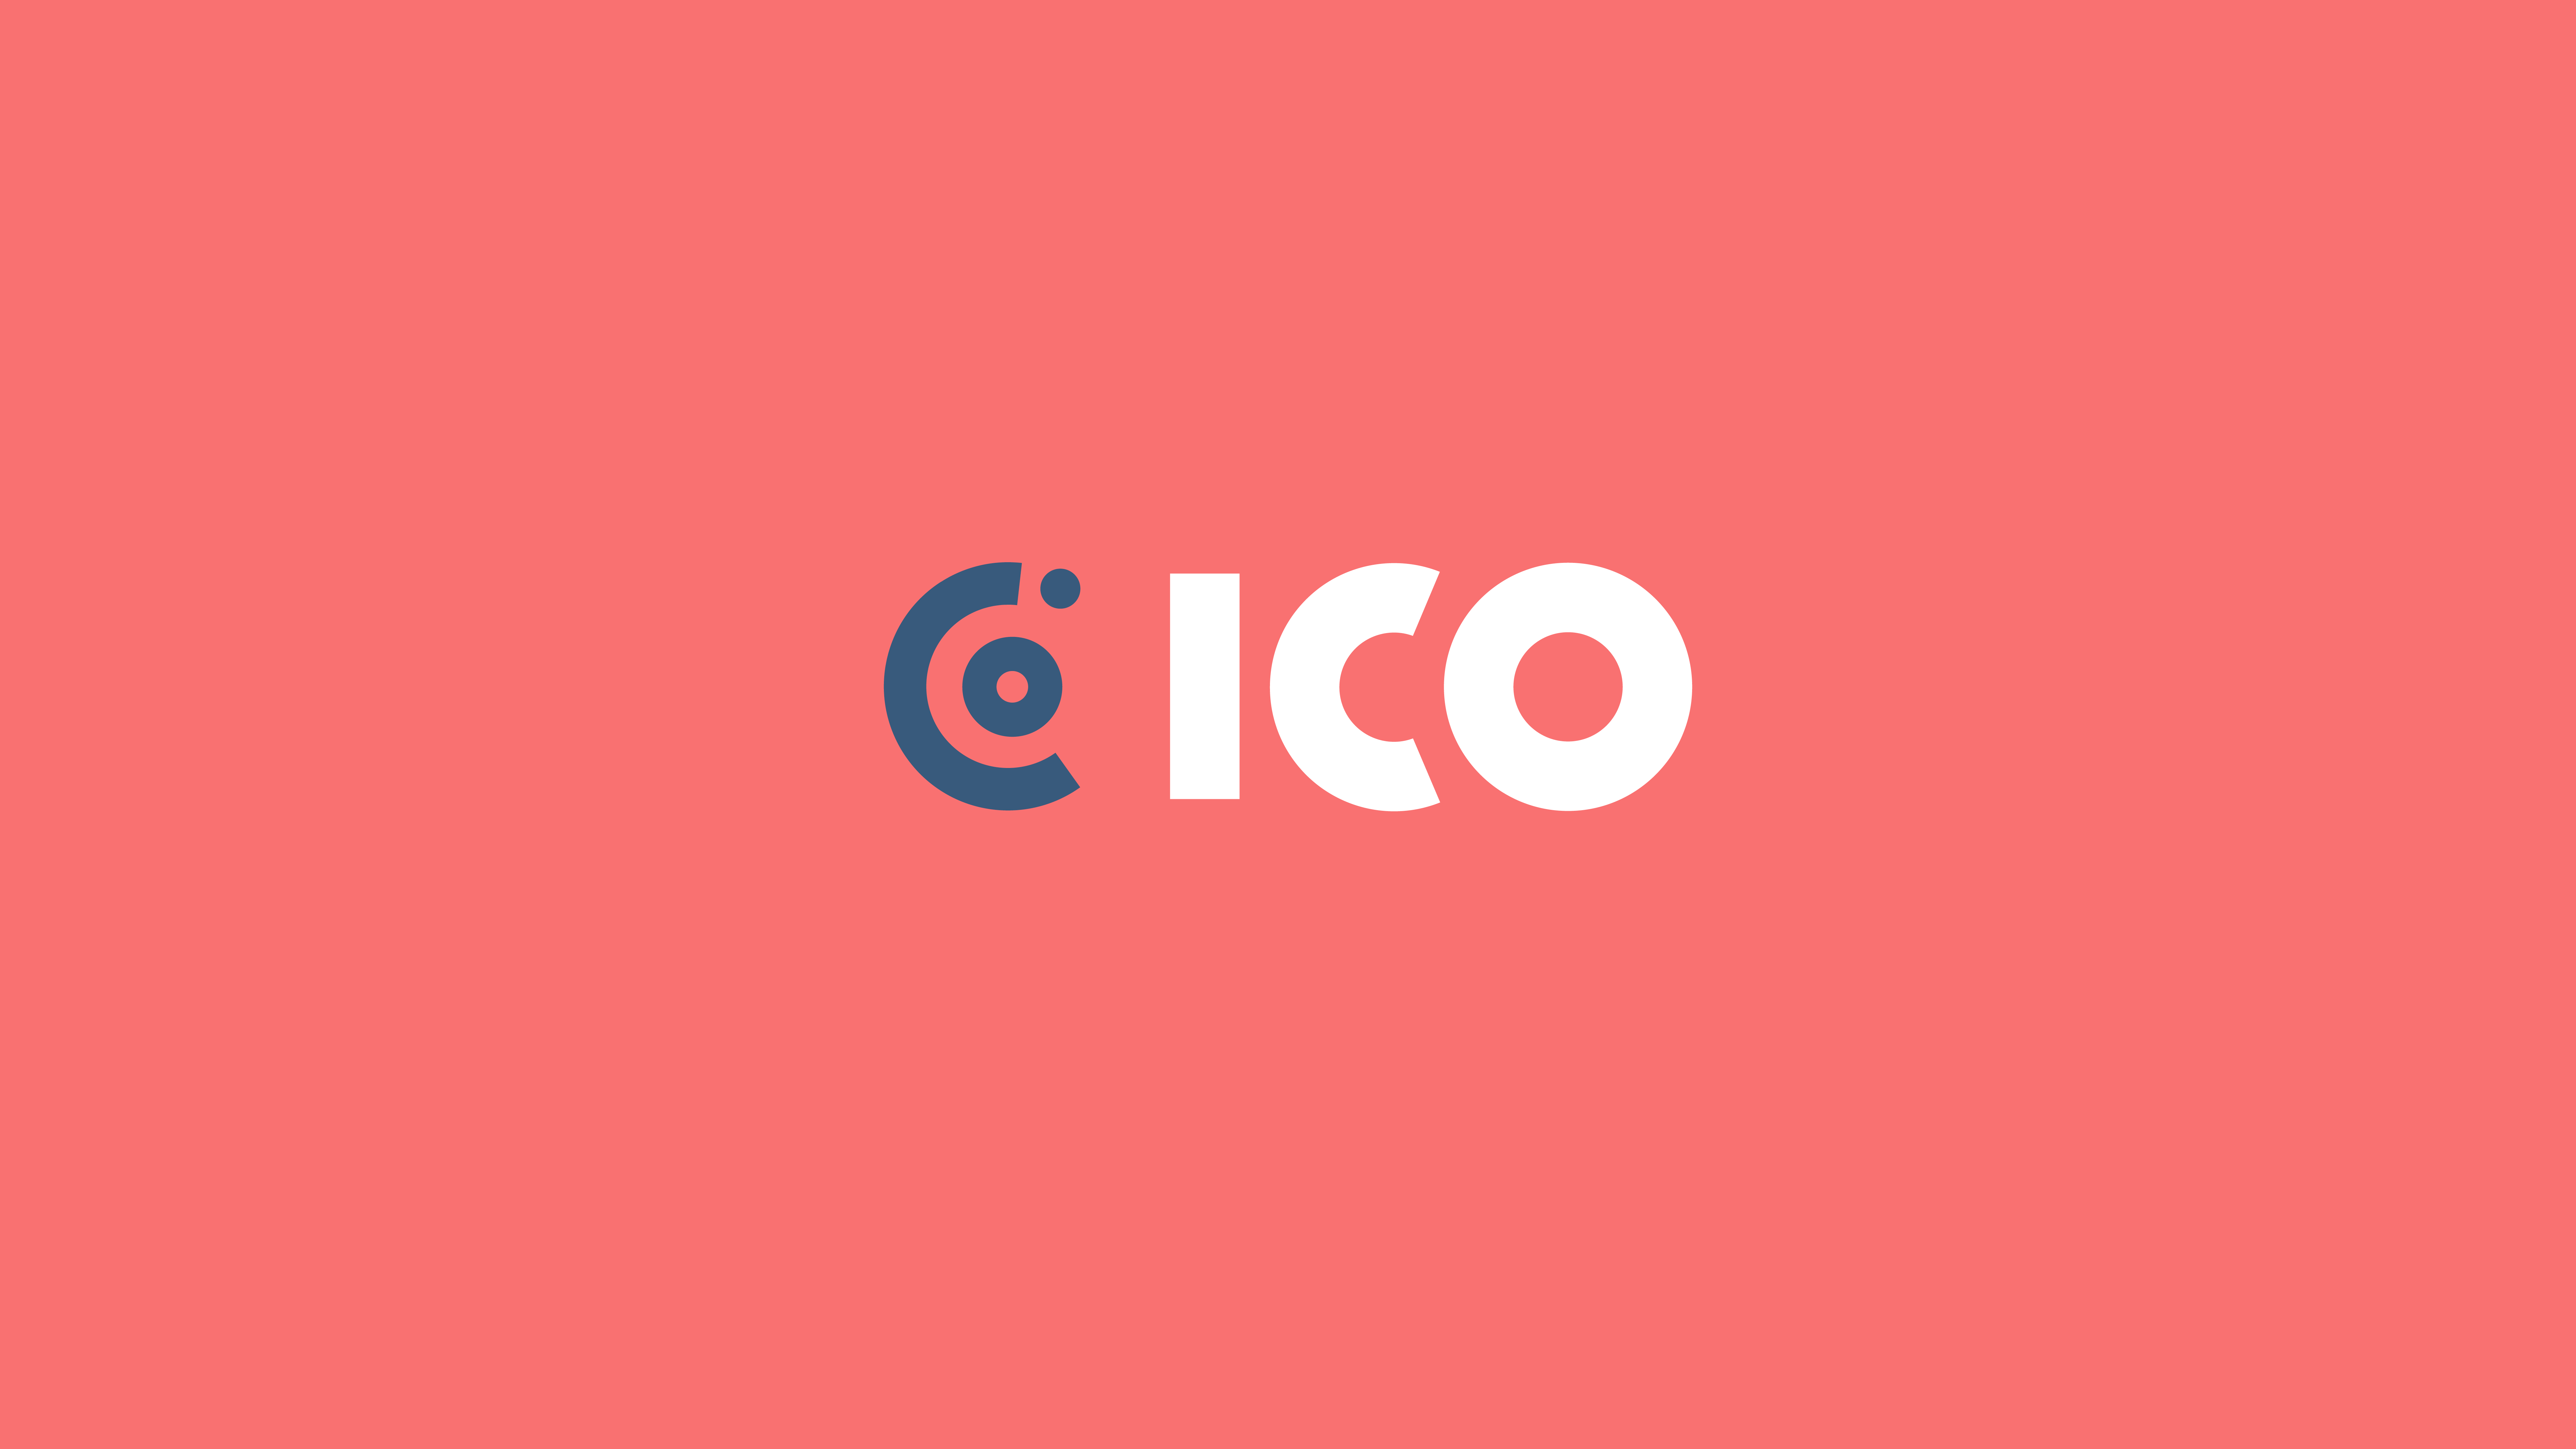 ICO Partners